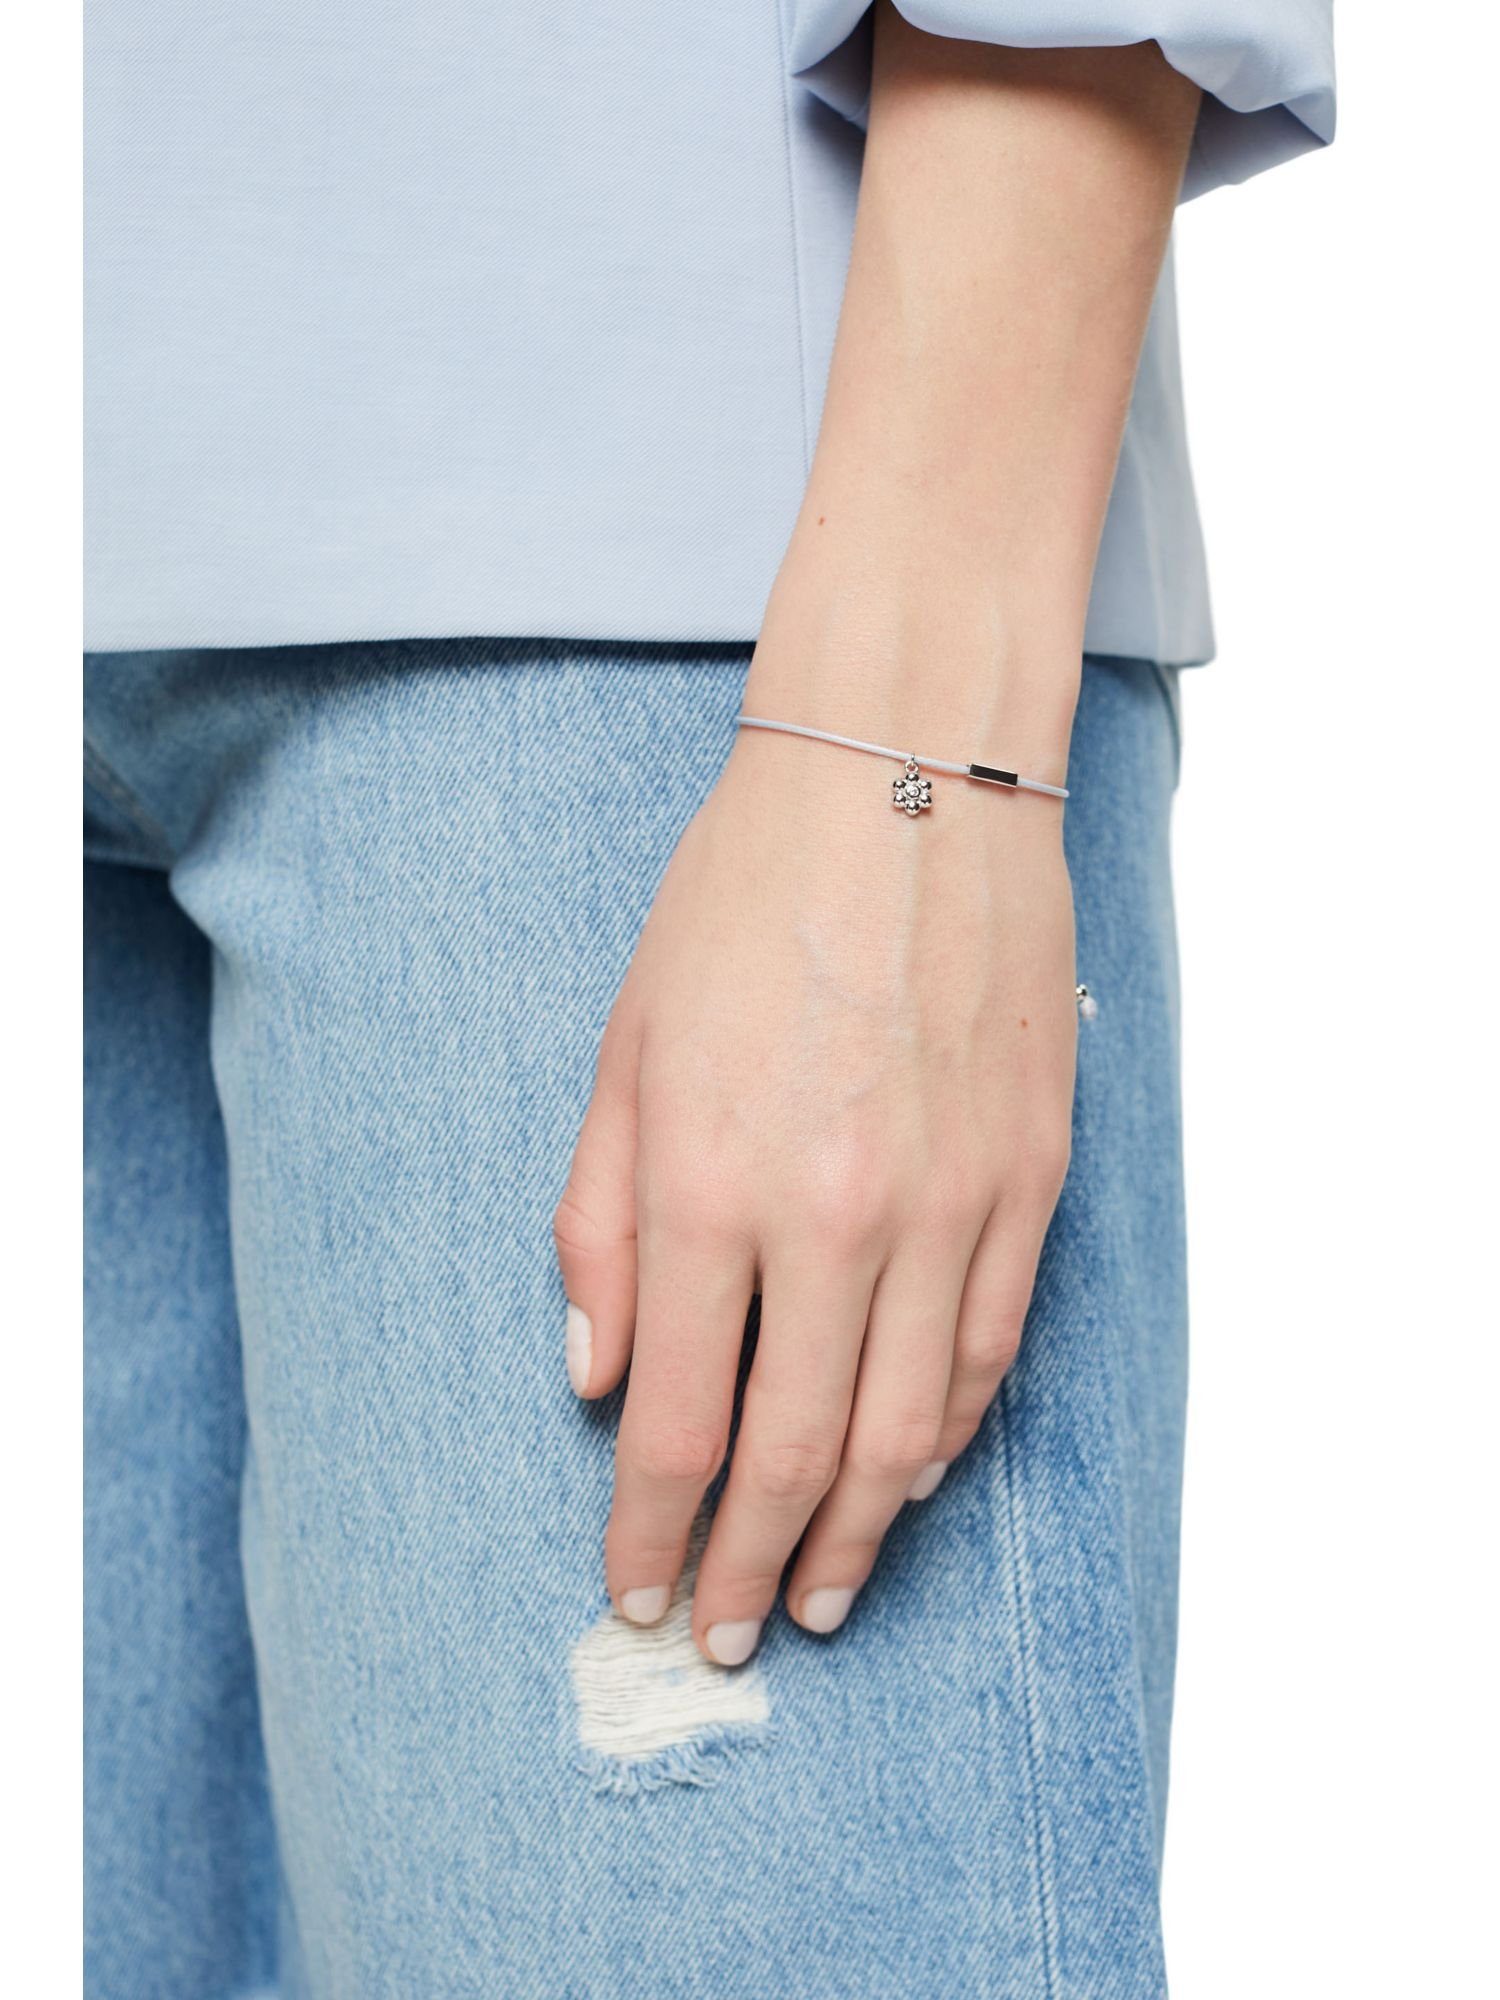 Damen Schmuck Esprit Silberarmband Armband mit Blumen-Anhänger, Sterling Silber